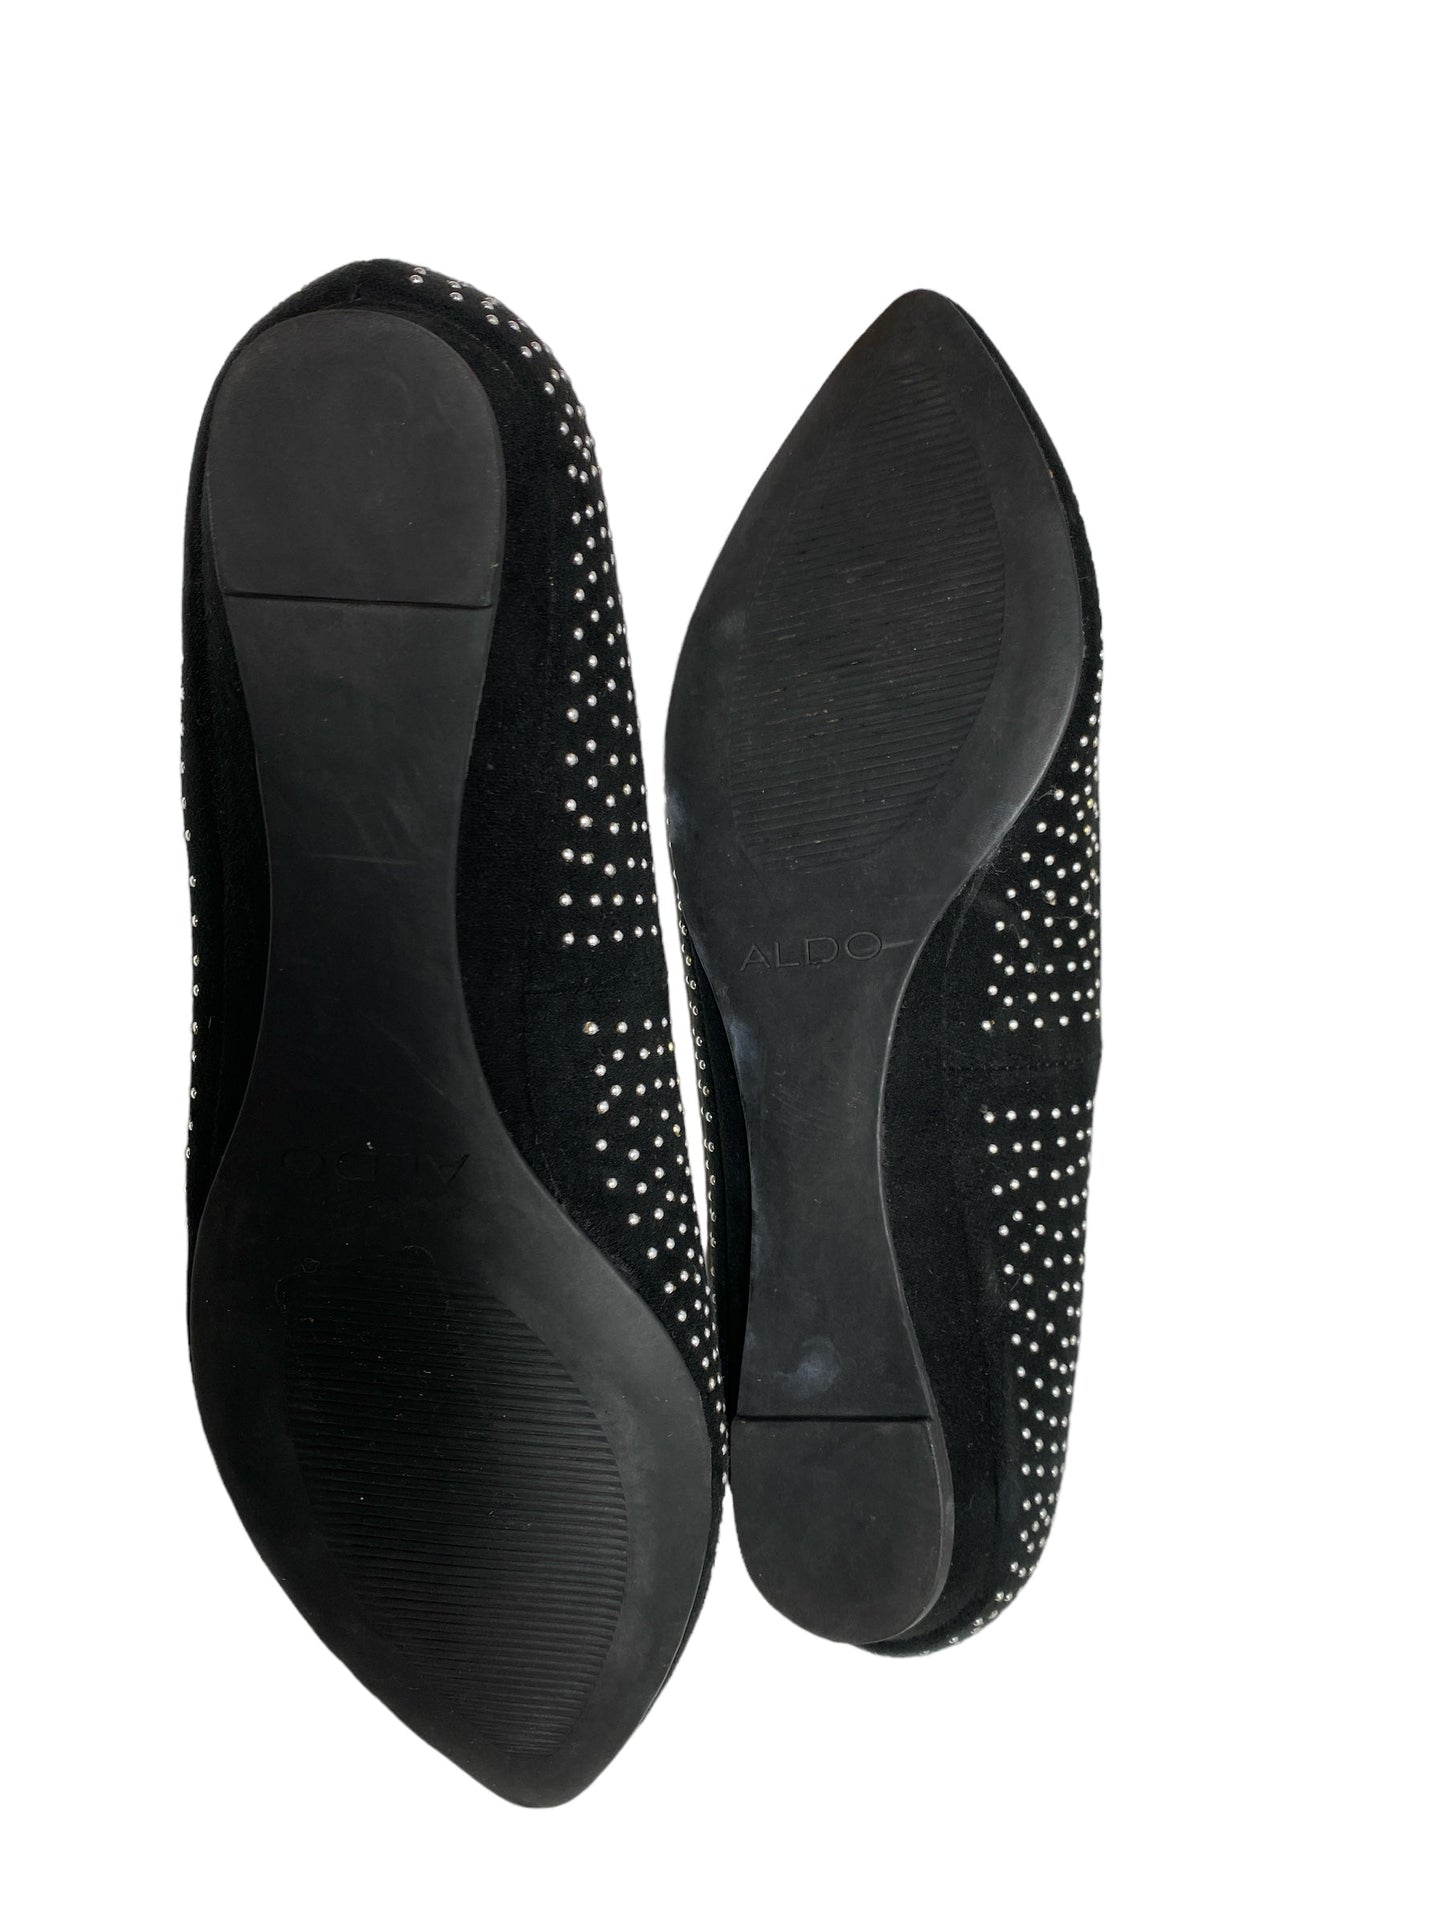 Black & Silver Shoes Flats Aldo, Size 7.5